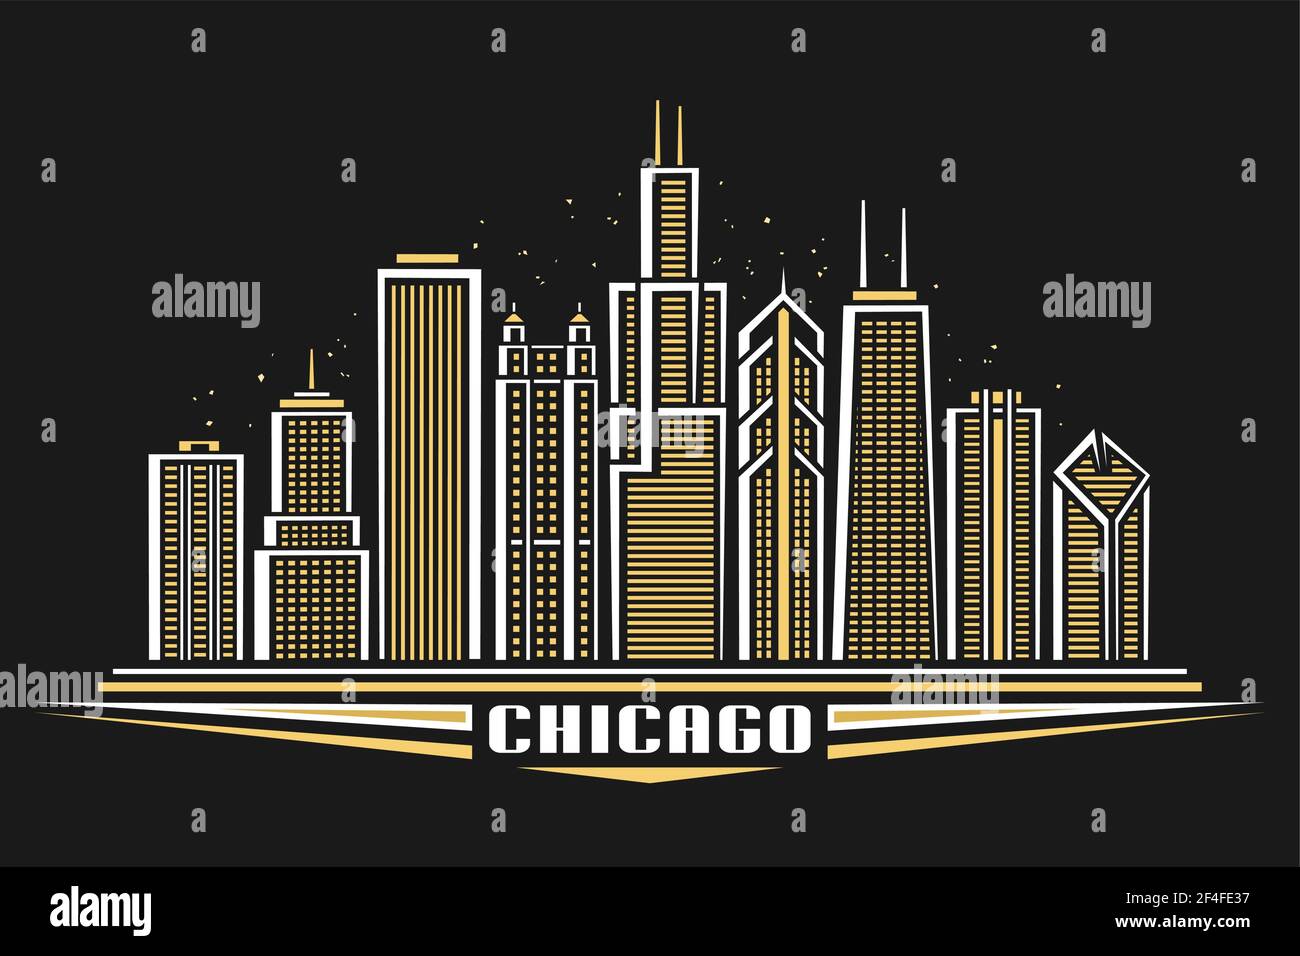 Vektor-Illustration von Chicago City, horizontales Plakat mit Linie Art Design beleuchtete chicago Stadtlandschaft, Panorama zeitgenössischen Konzept mit Decora Stock Vektor